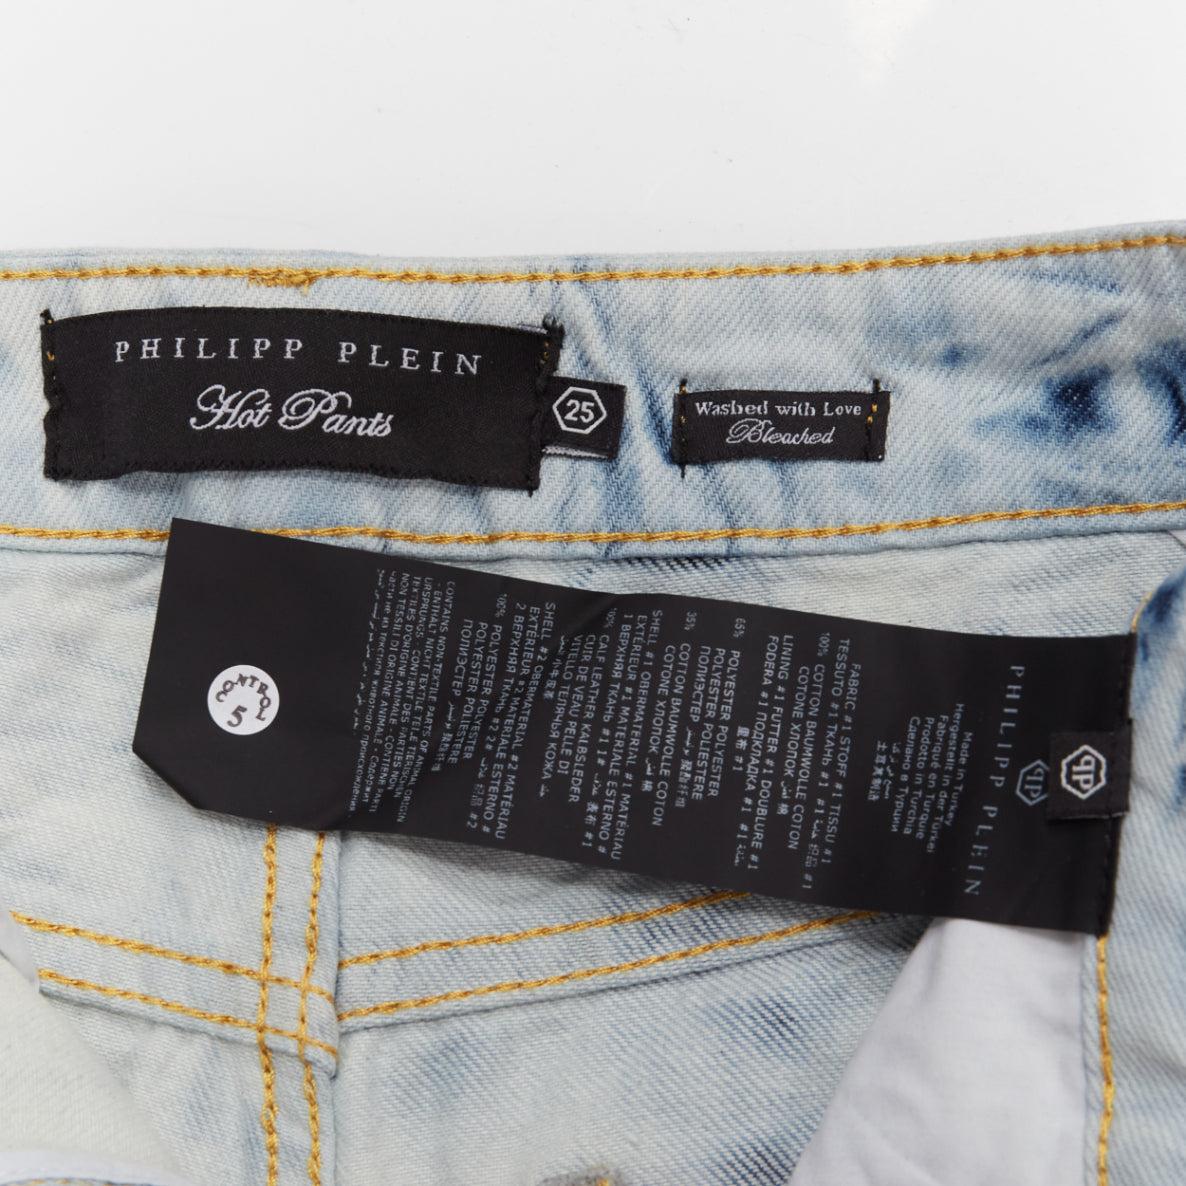 PHILLIP PLEIN Hot Pants blau acid washed logo tag cuffed shorts 25